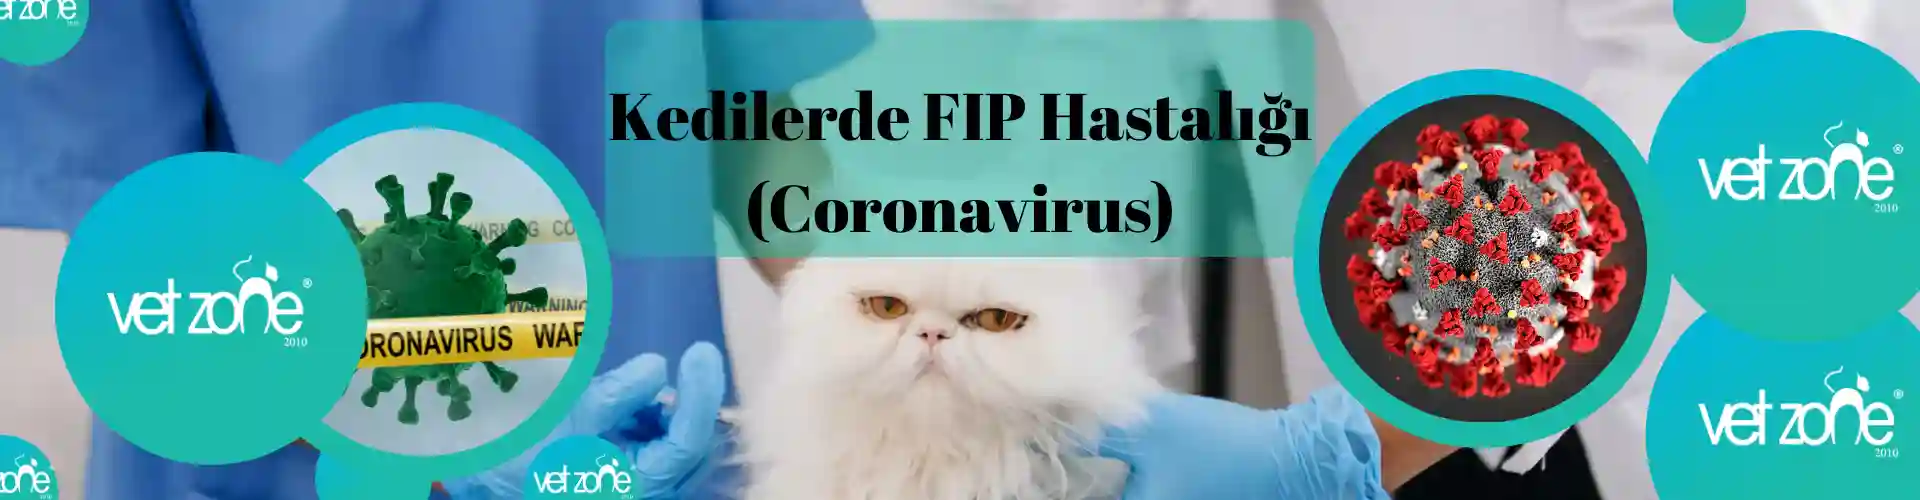 Kedilerde FIP Hastalığı (Coronavirus) Nedir?